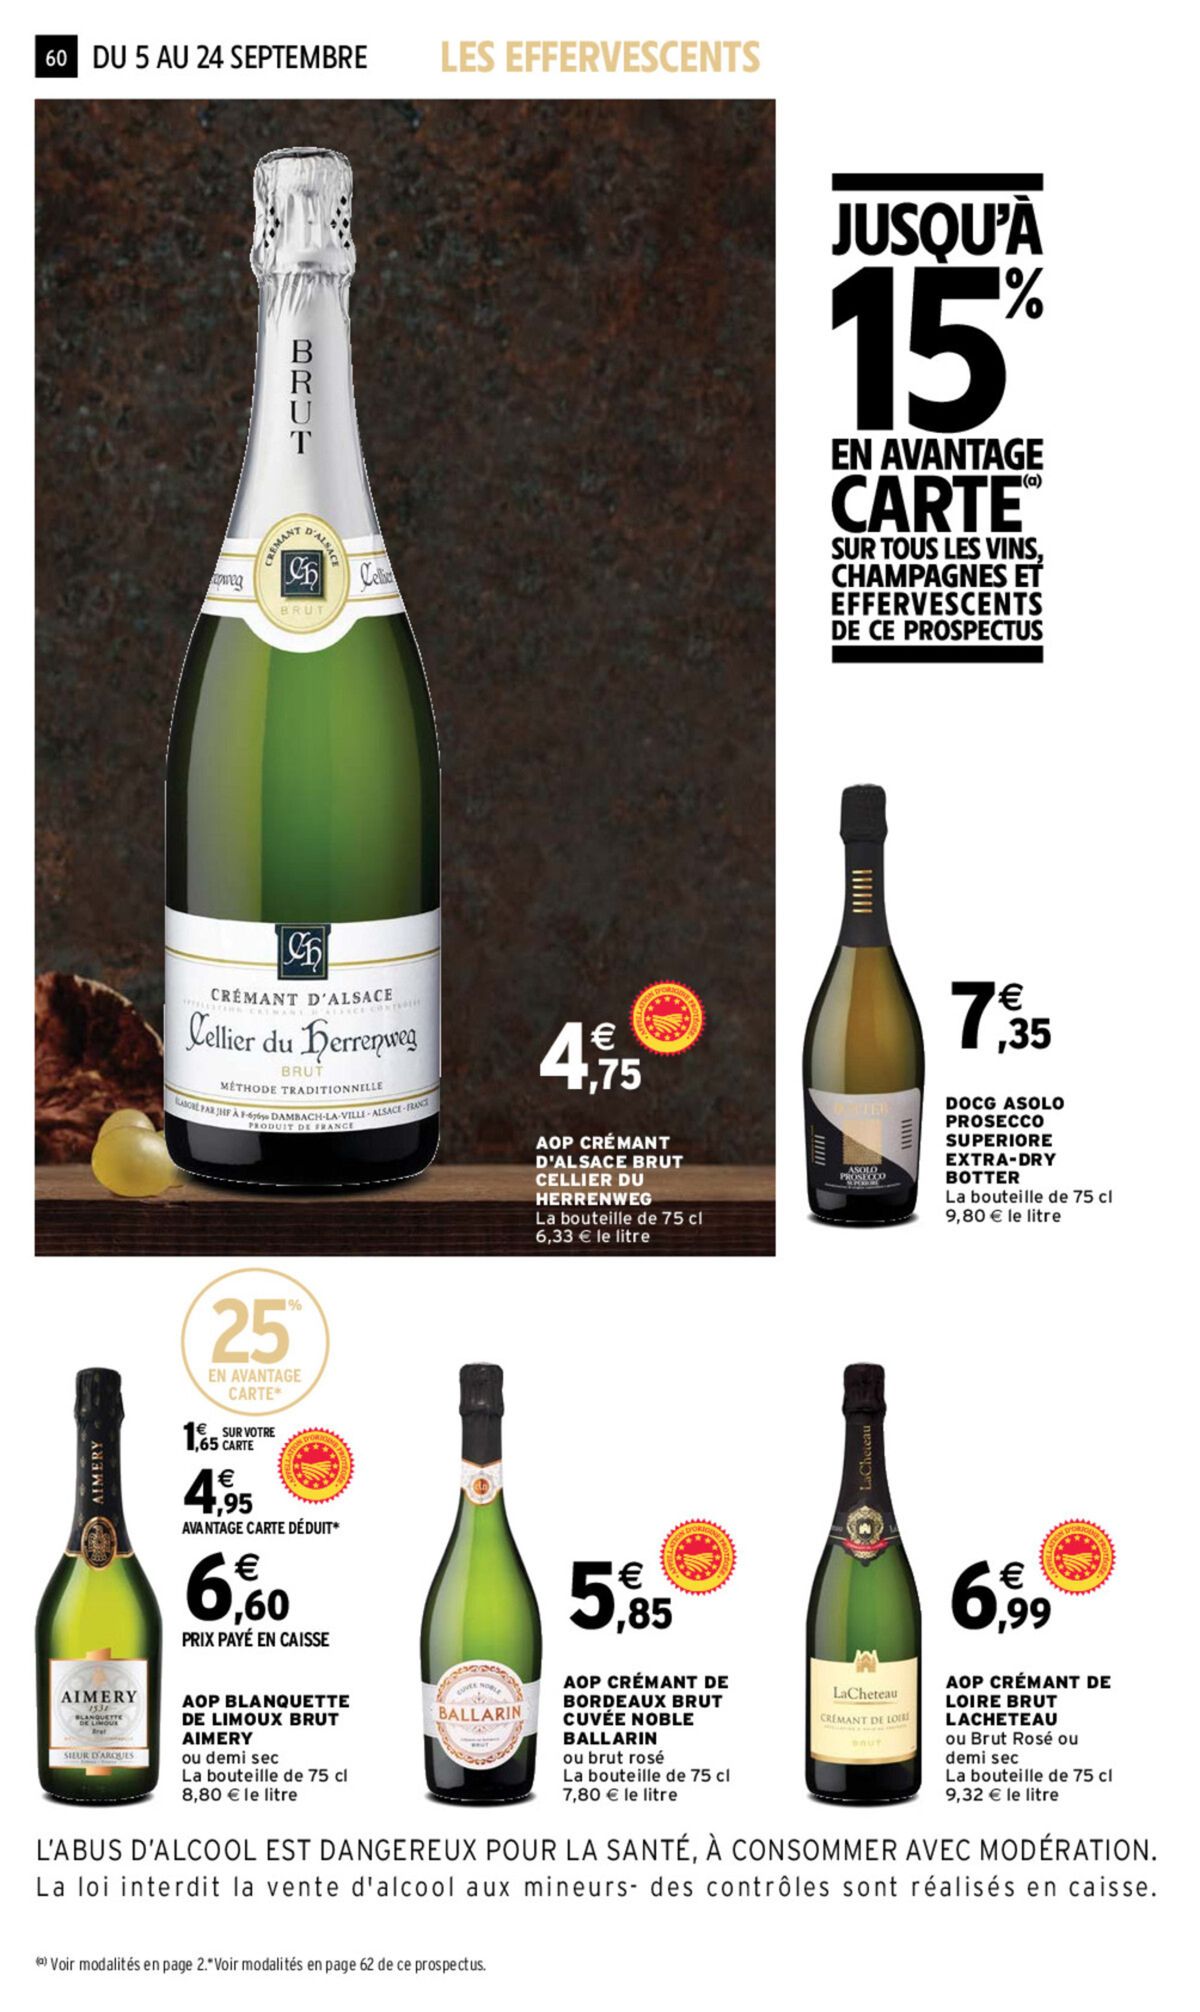 Catalogue Foire aux vins, page 00059